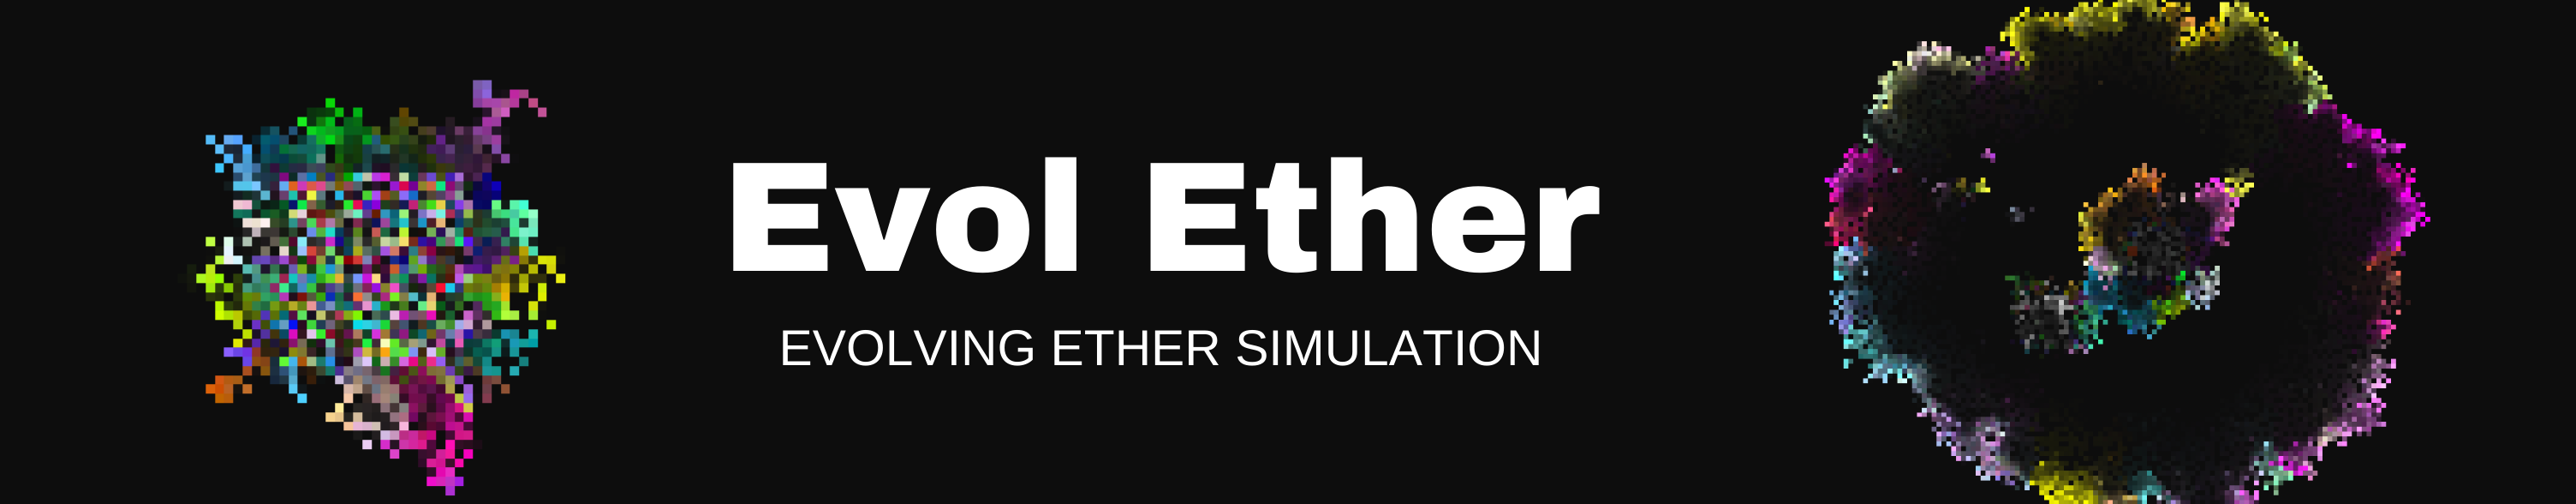 Evol Ether: Evolving Ether Simulation